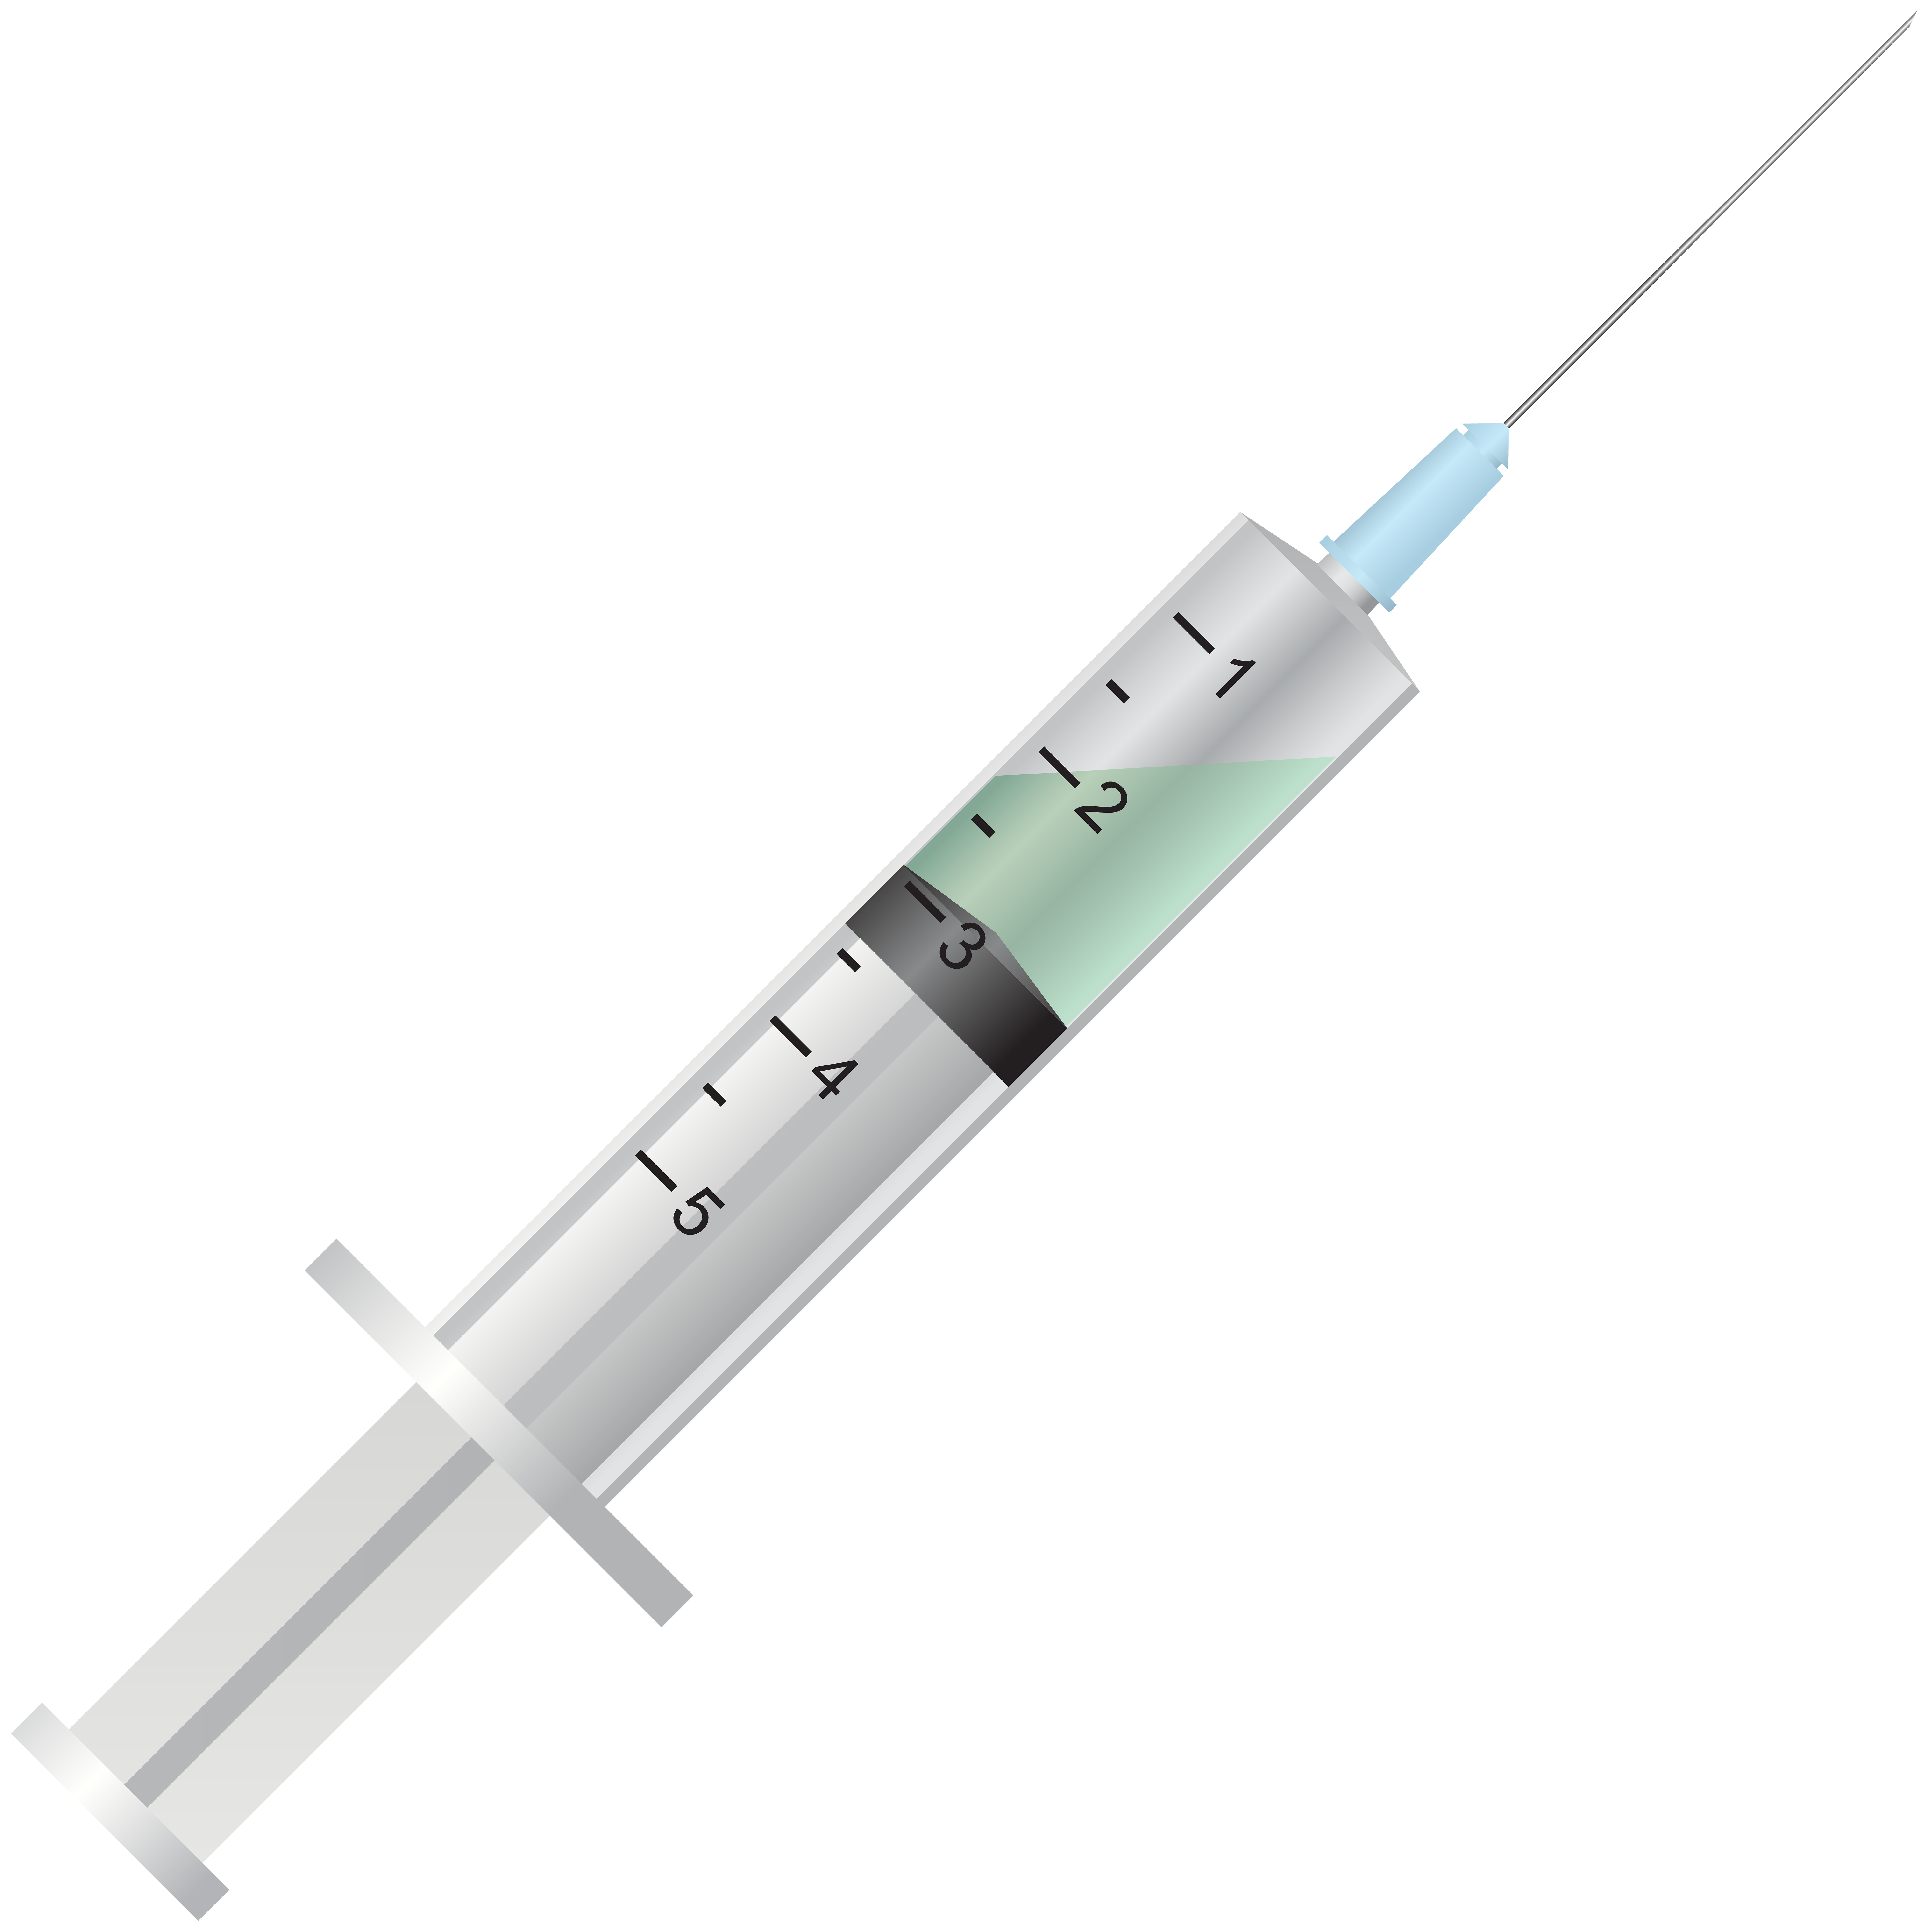 medical syringe clipart images